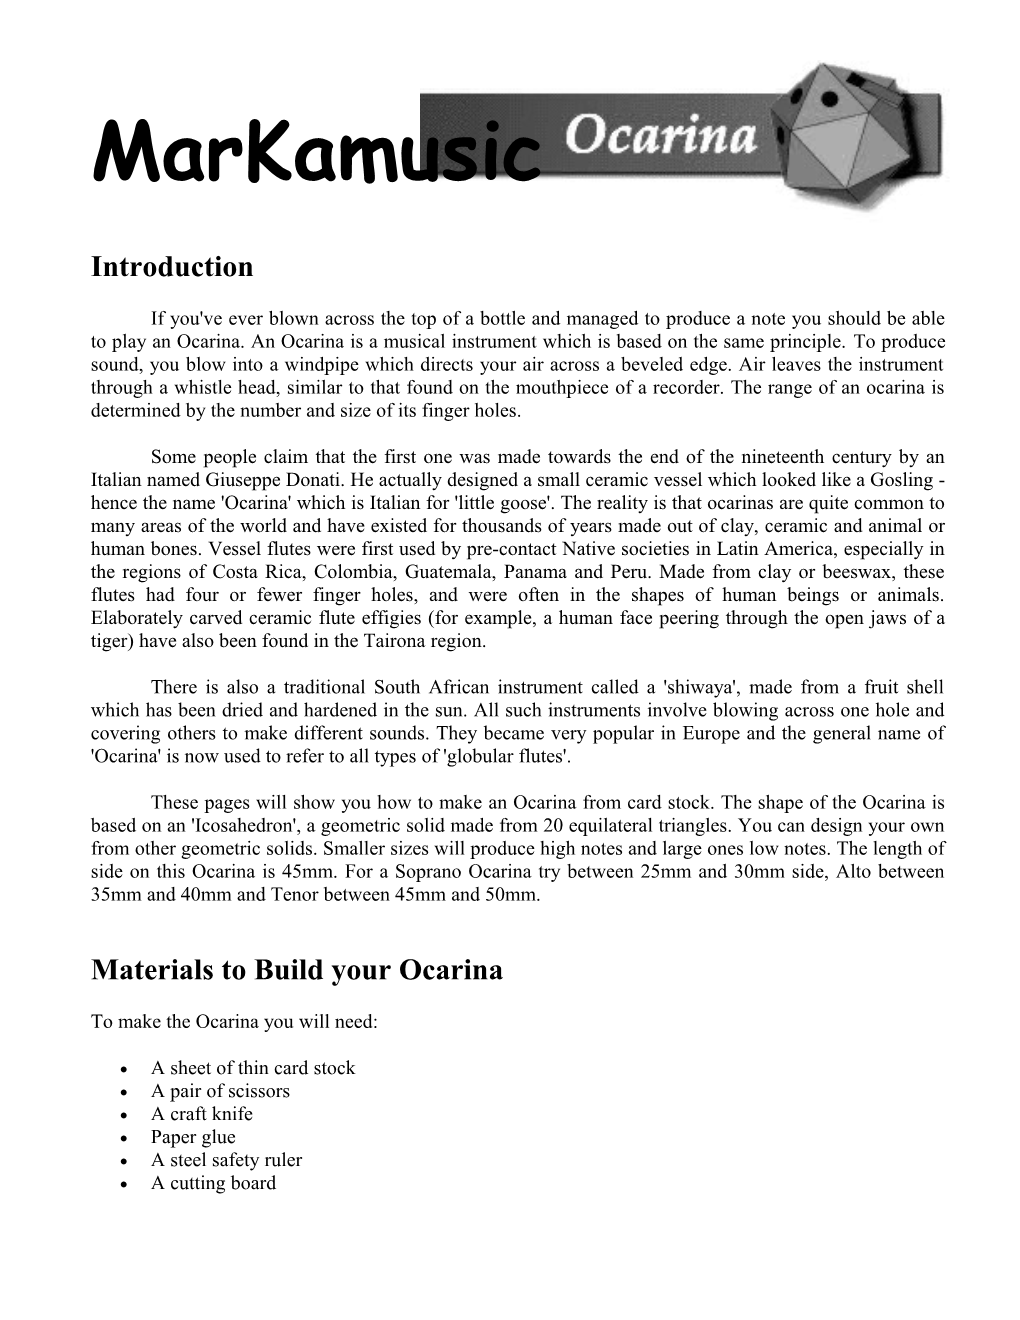 Markamusic Guide To Make An Ocarina